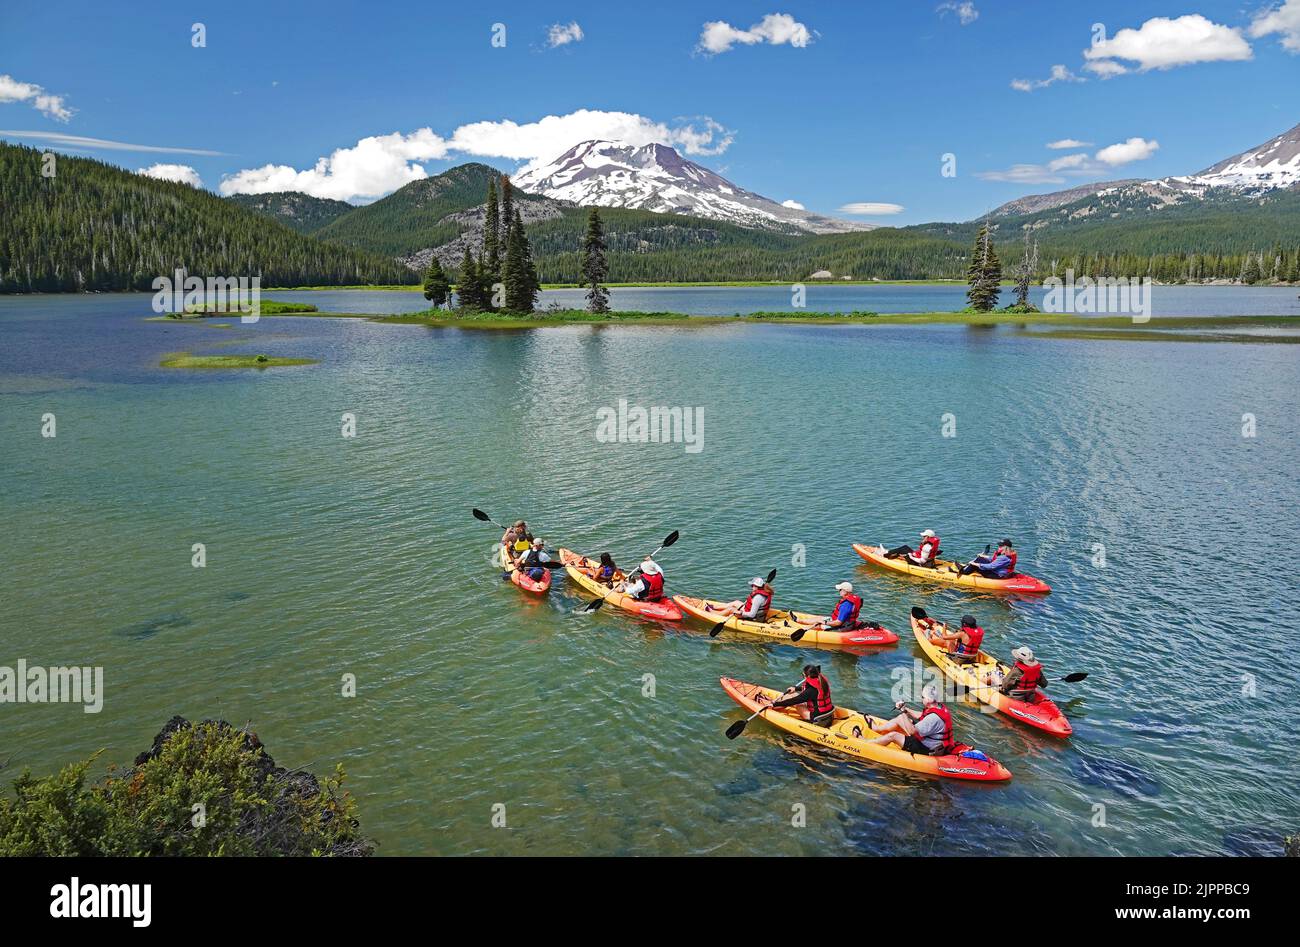 Los kayakistas disfrutan de un día de verano en Sparks Lake cerca de un pico nevado South Sisters Peak en las Oregon Cascades a principios de julio. Foto de stock